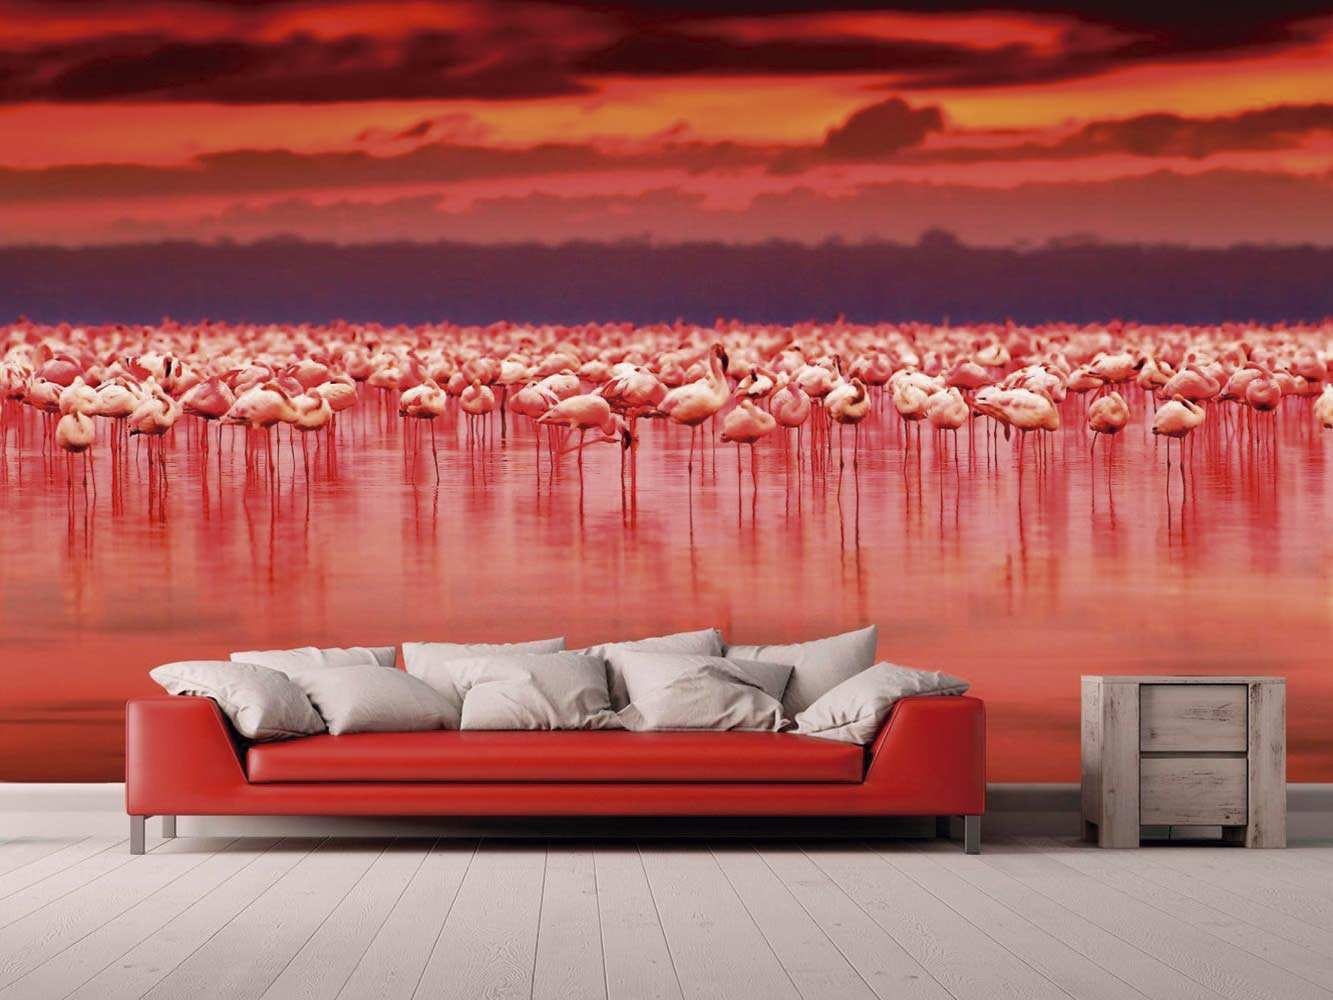 Papel pintado de flamencos rojos para decoración del hogar